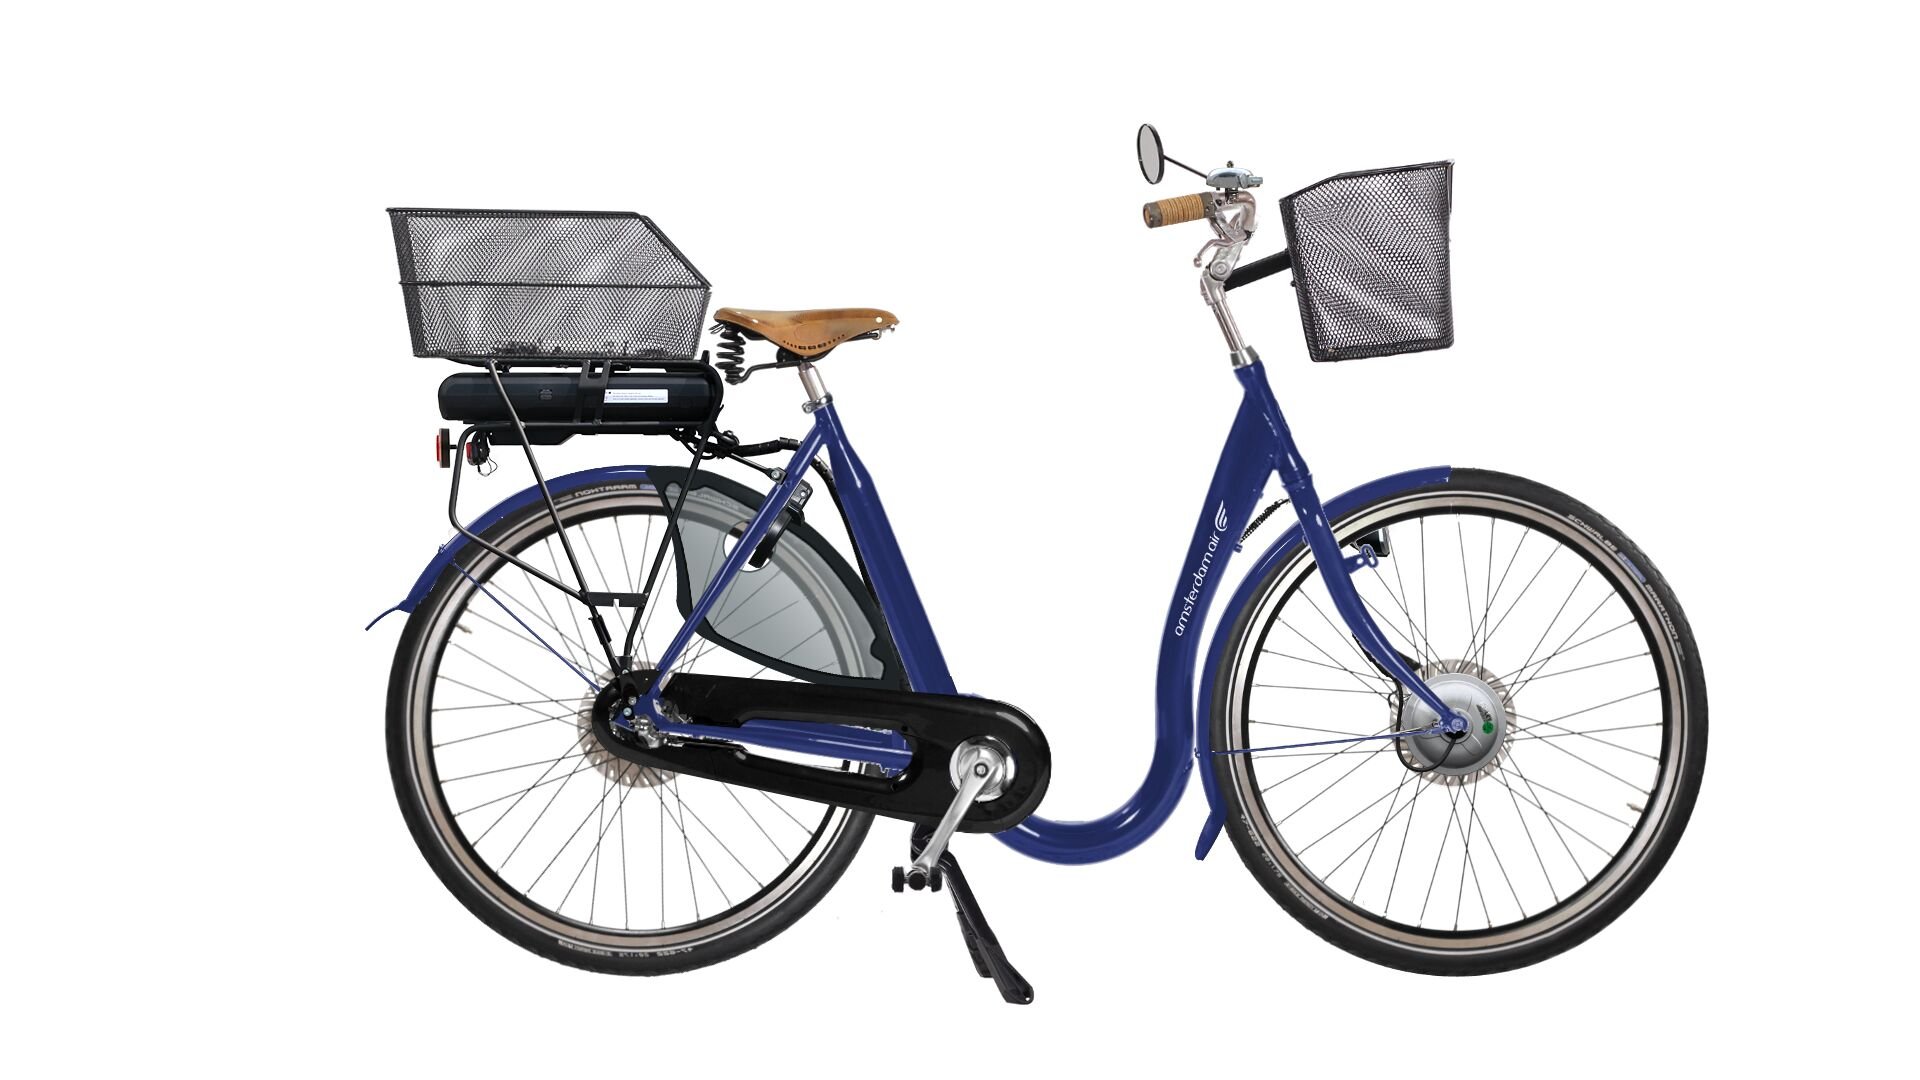 City Must Premium électrique avec cadre bleu, béquilmle double et paniers à l'avant et à l'arrière